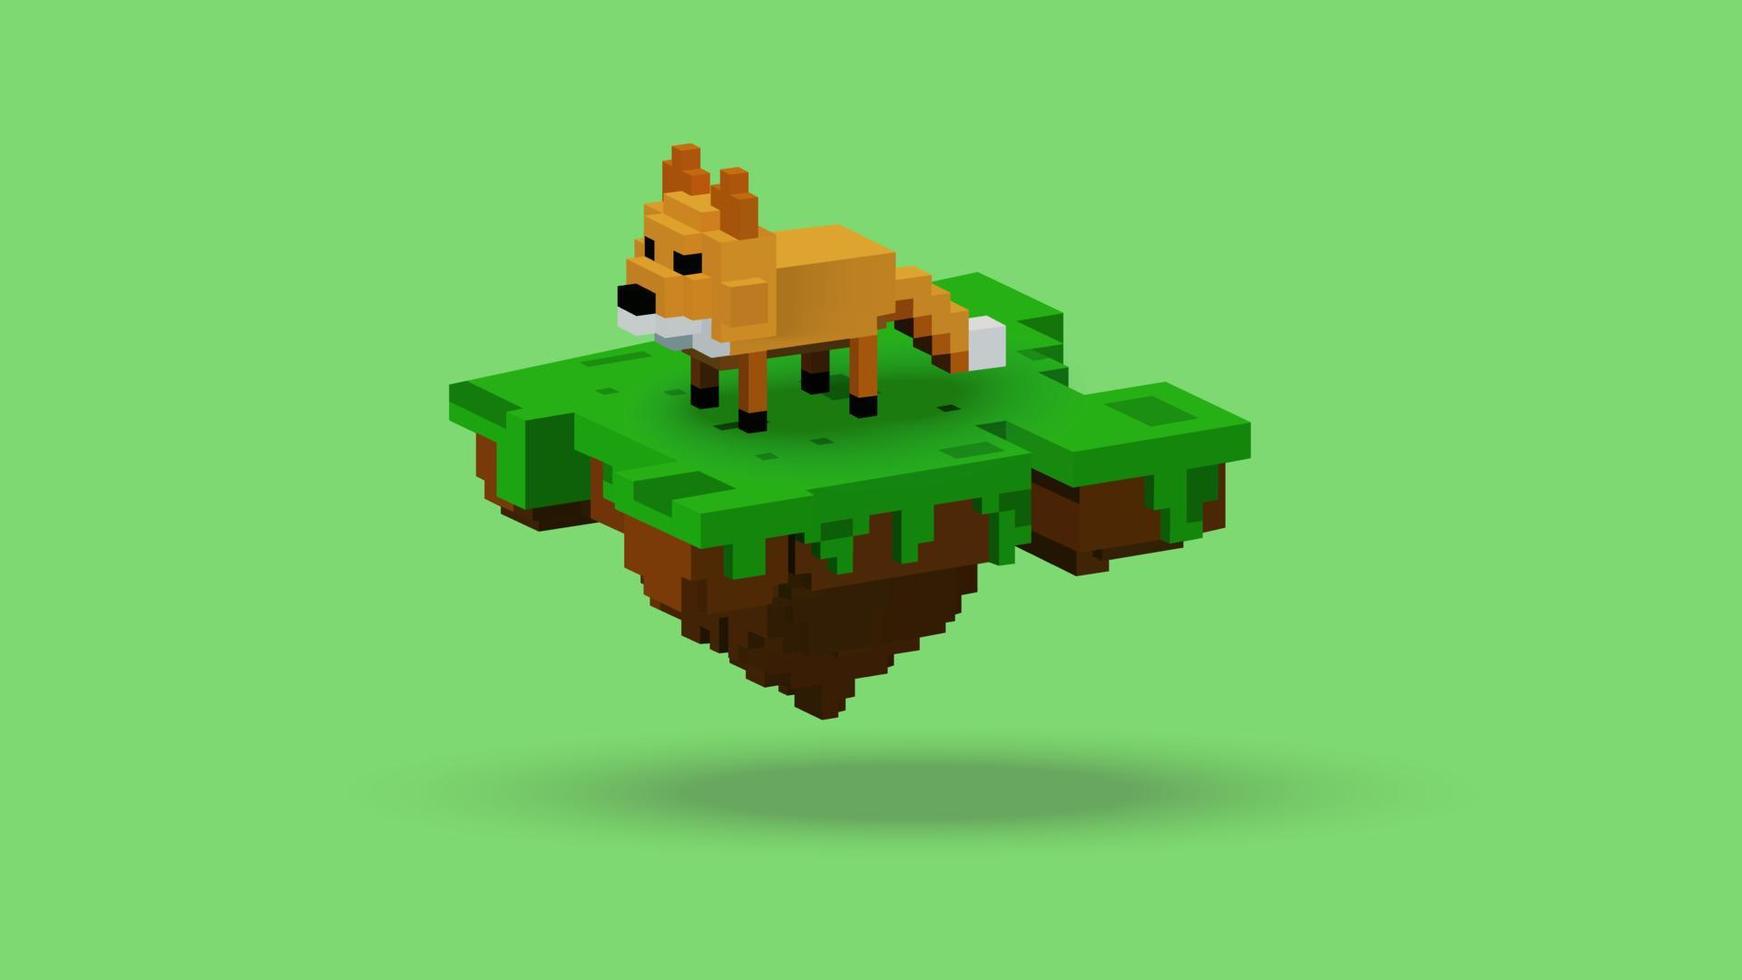 grafica vettoriale di rendering 3d animale volpe sull'isola galleggiante con stile voxel. utilizzando la combinazione di colori arancione, marrone, nero, verde e bianco. perfetto per i riferimenti ai personaggi di gioco